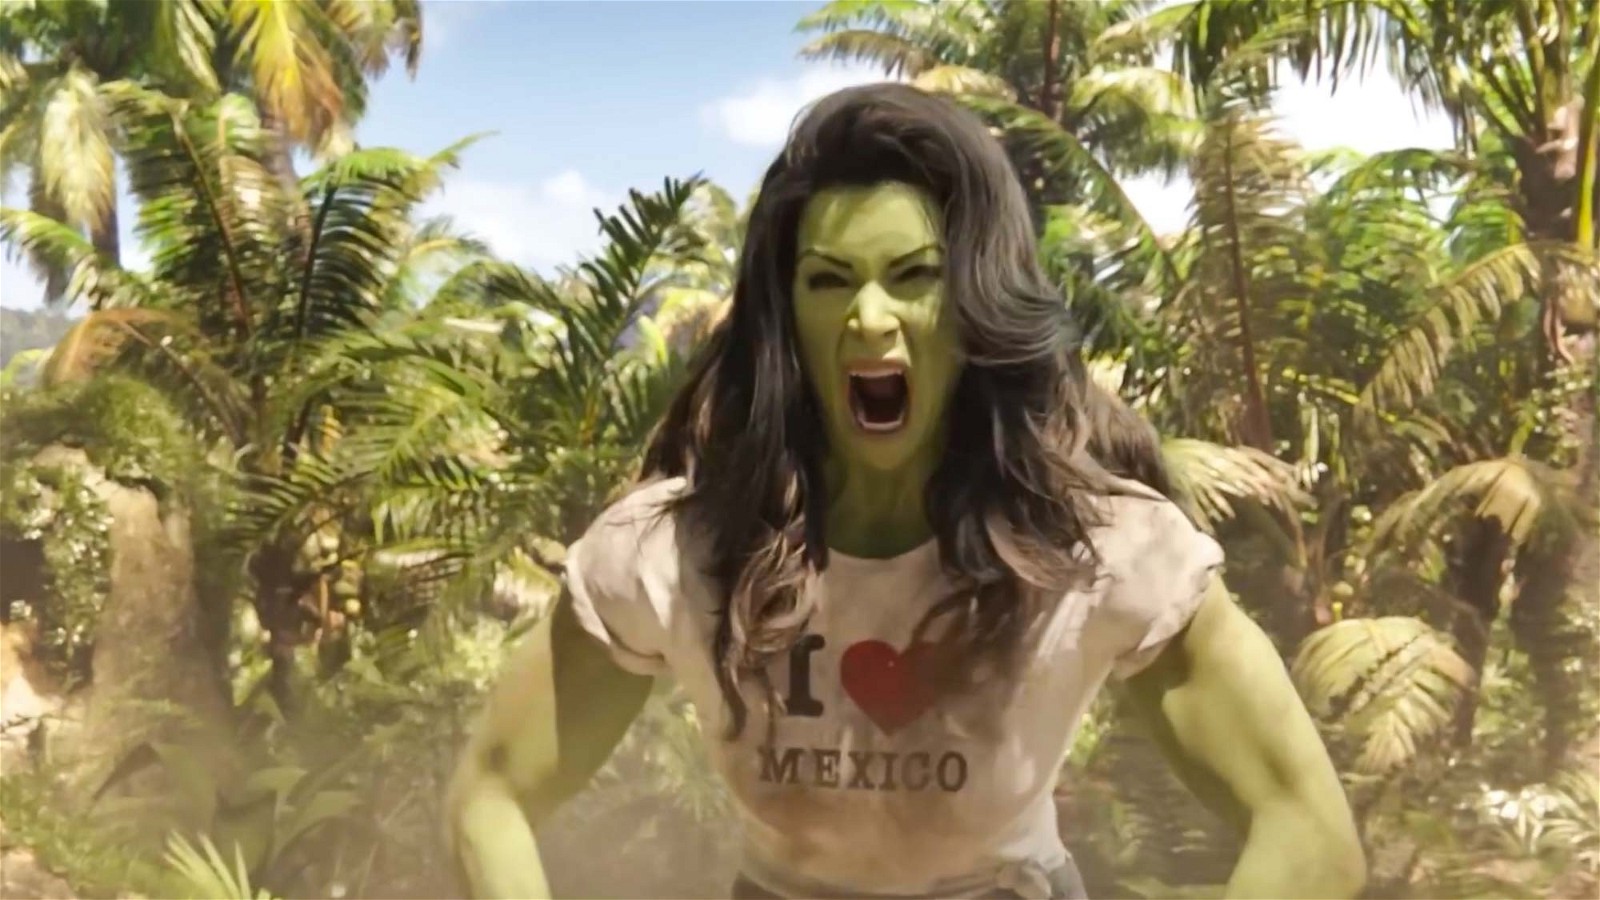 Tatiana Maslany as She Hulk